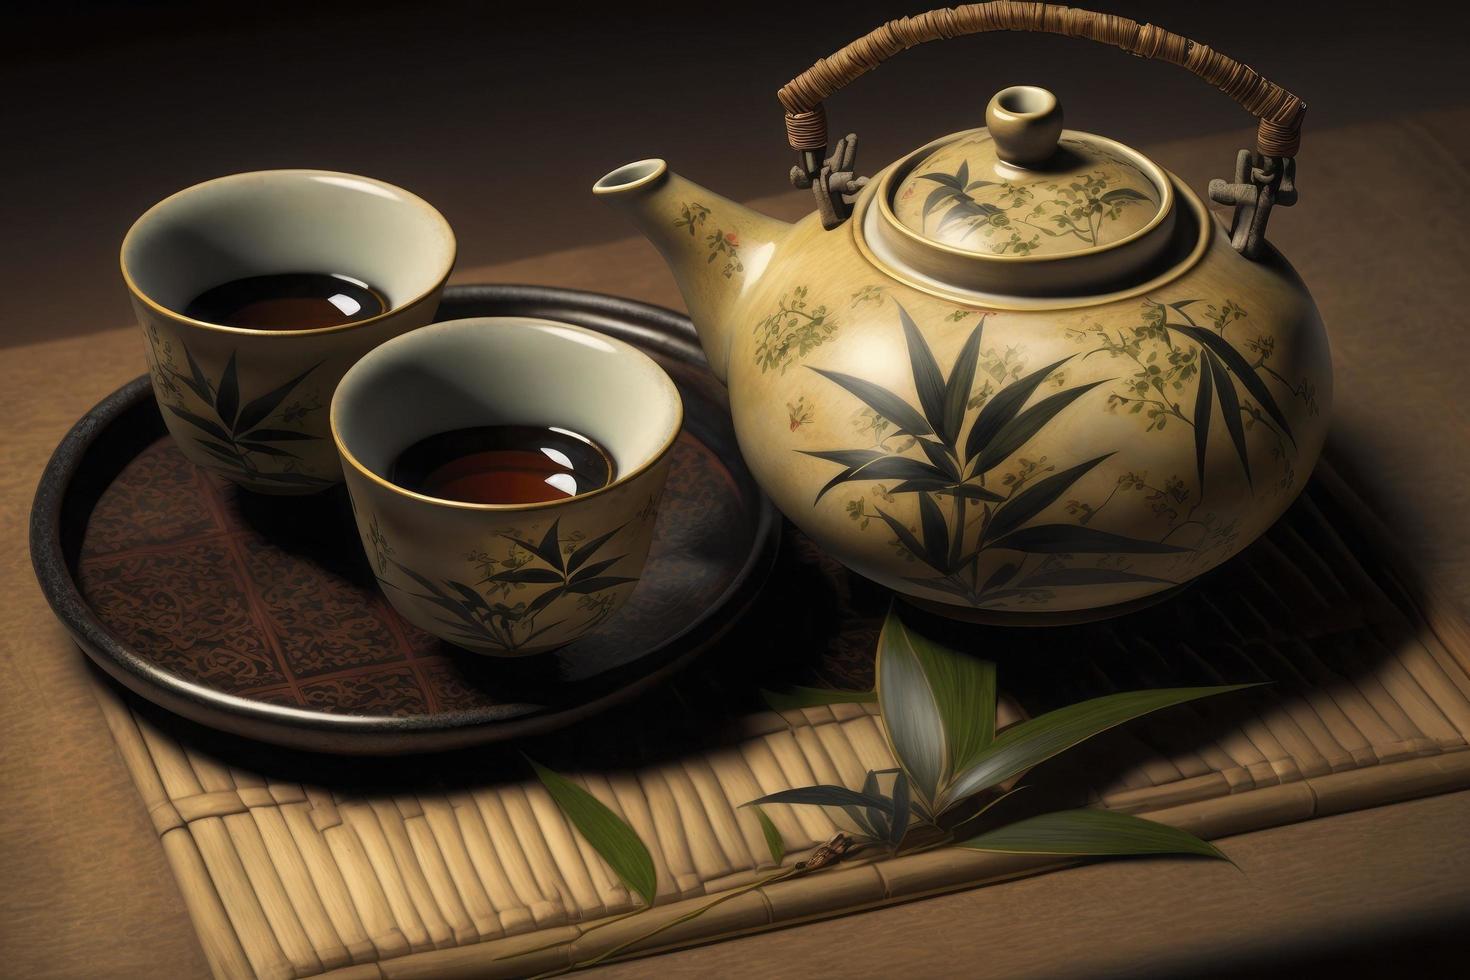 japansk te - varm tekanna och tekoppar på bambu matta foto